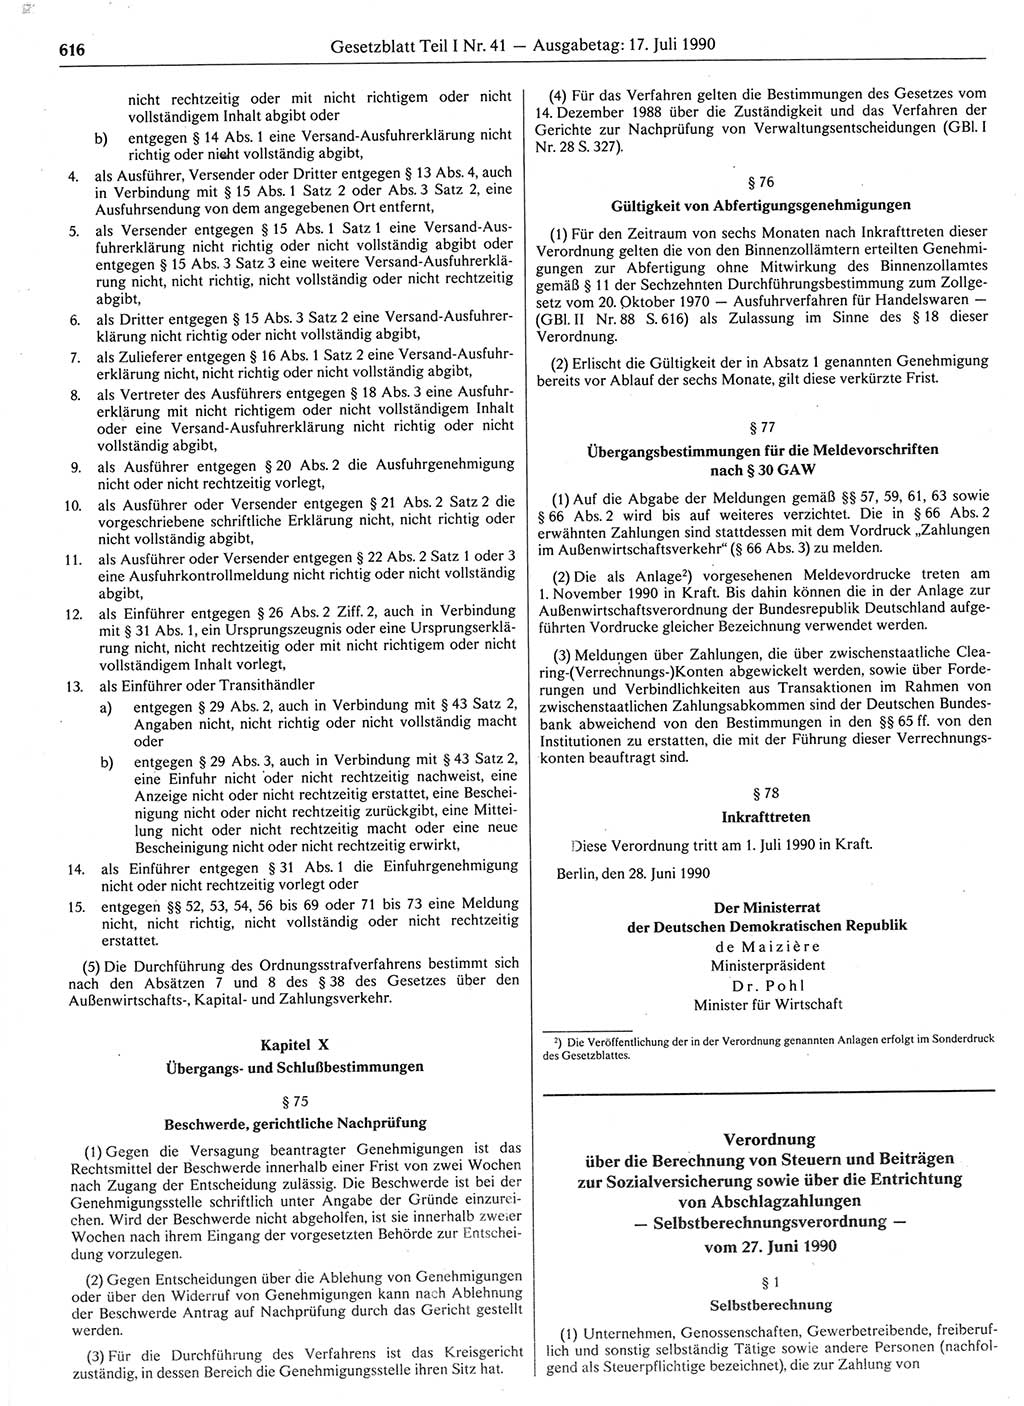 Gesetzblatt (GBl.) der Deutschen Demokratischen Republik (DDR) Teil Ⅰ 1990, Seite 616 (GBl. DDR Ⅰ 1990, S. 616)